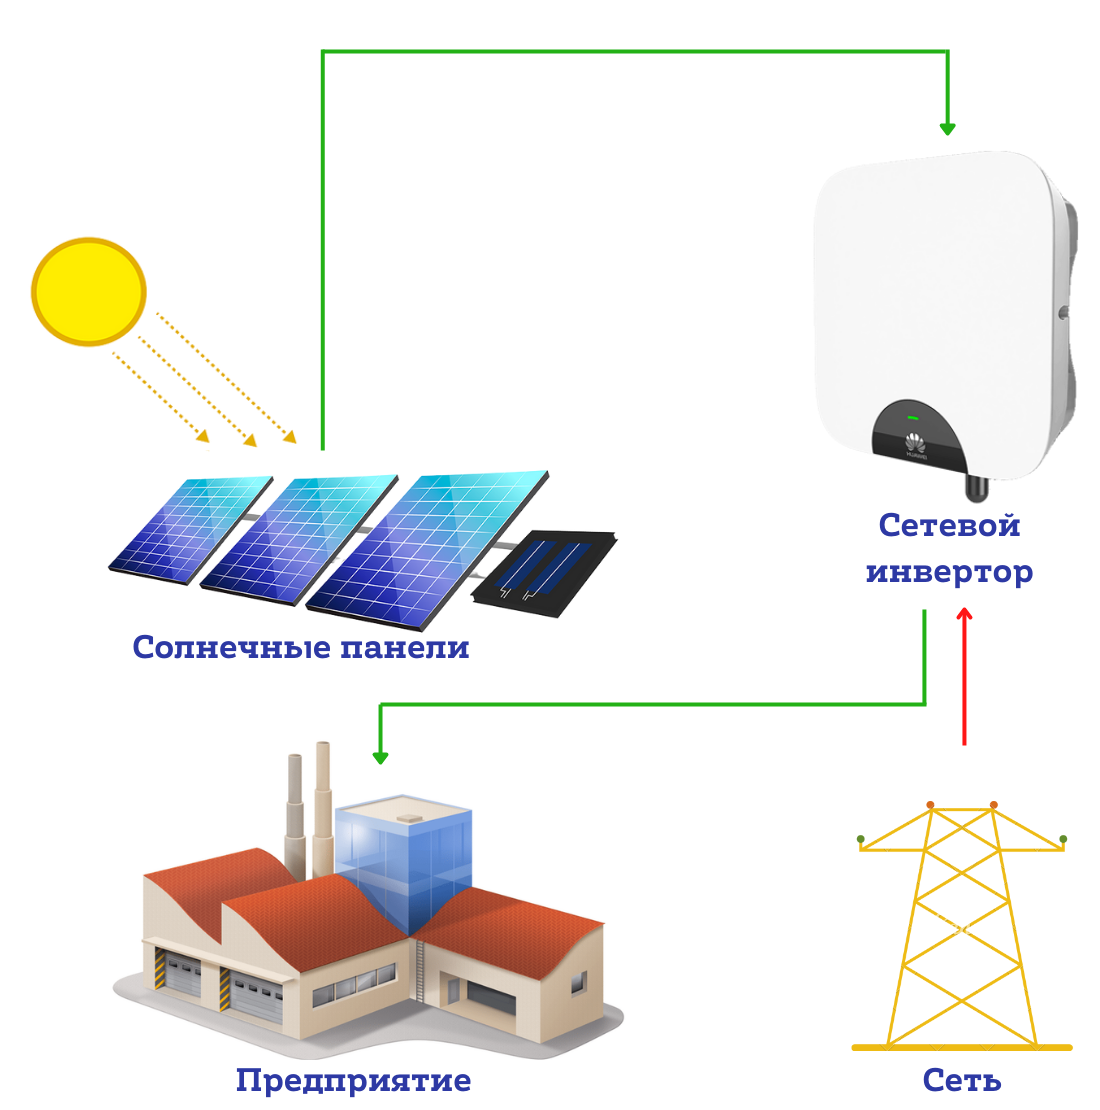 Сетевая солнечная электростанция для предприятия 15 кВт Huawei